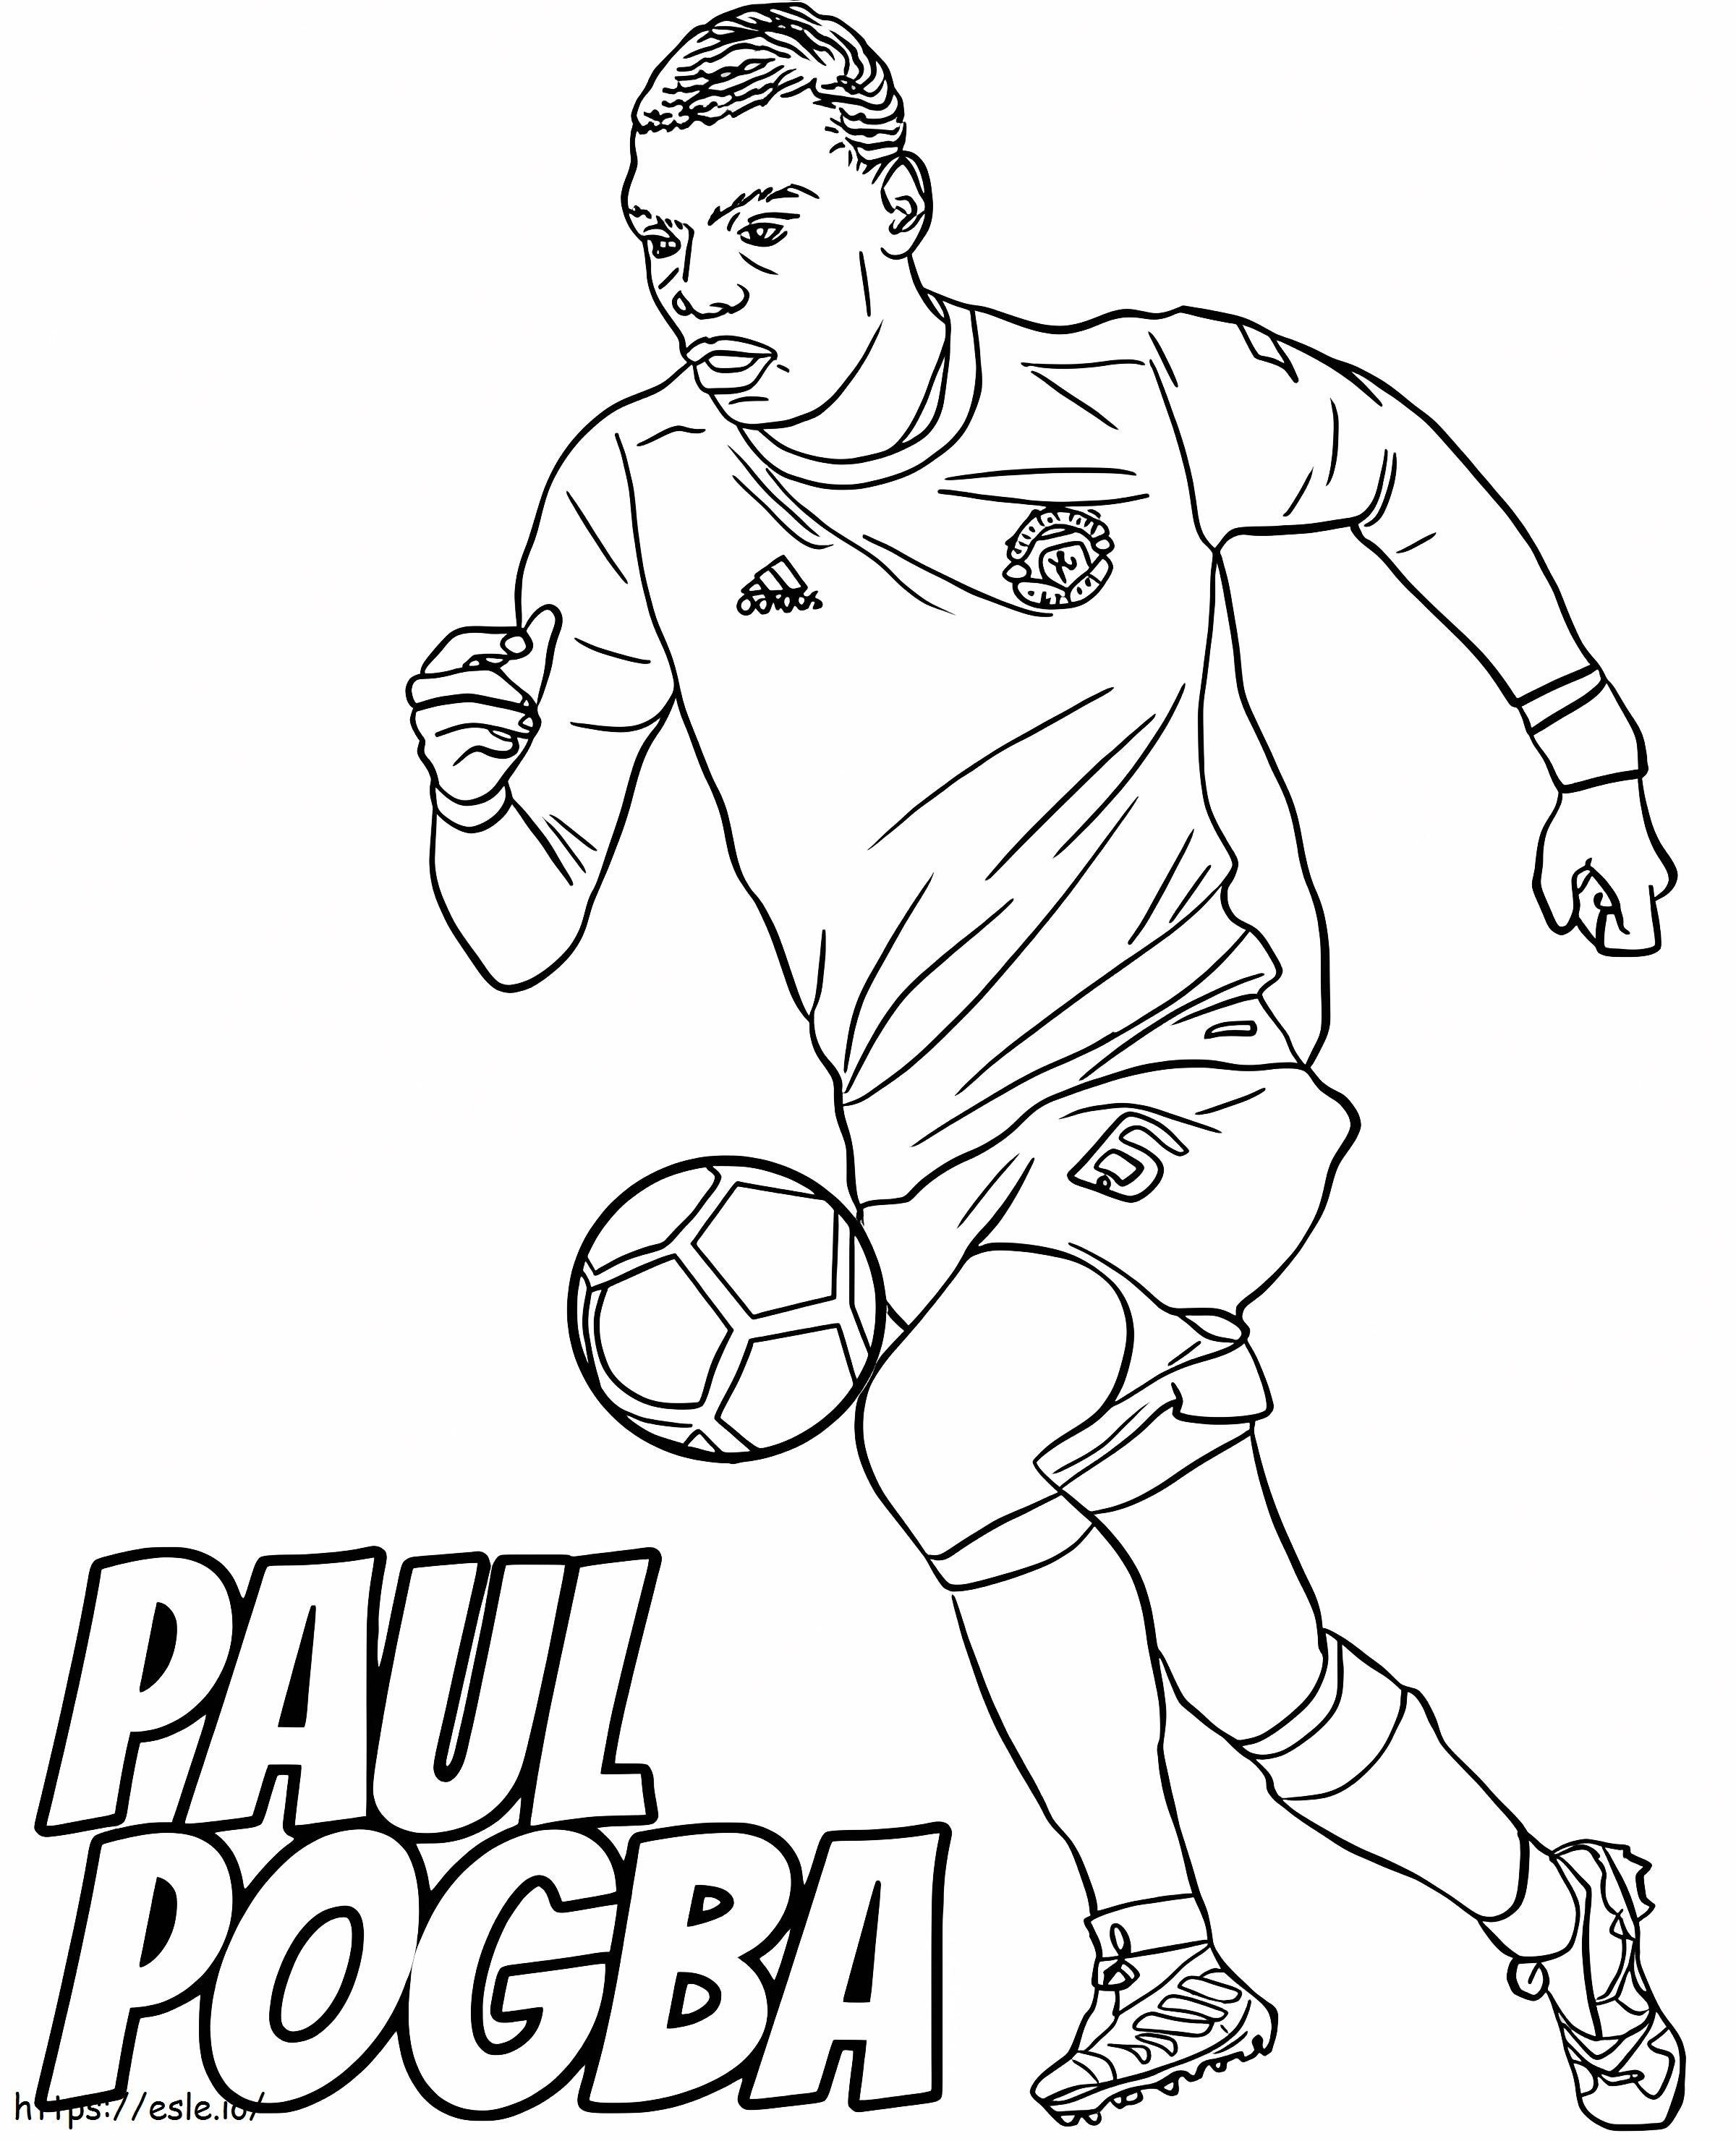 Paul Pogba odbija piłkę kolorowanka